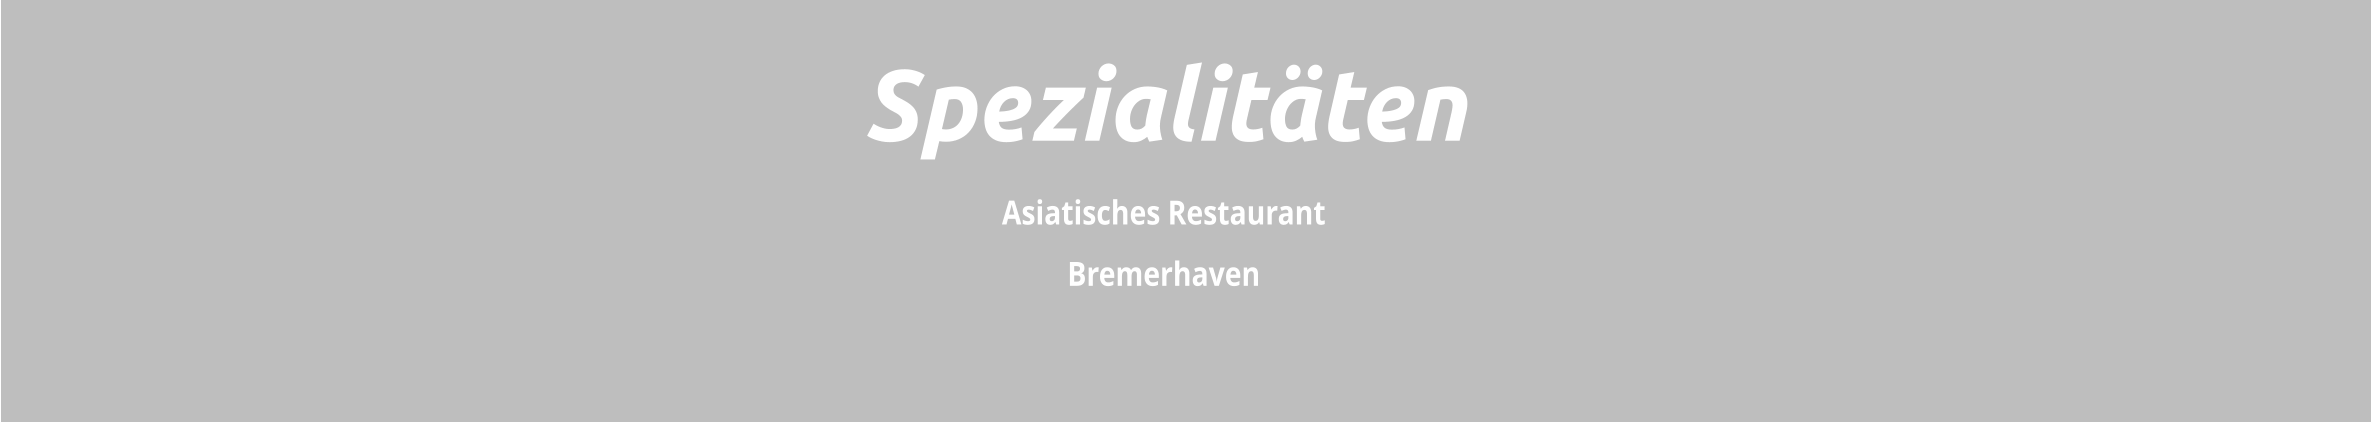 Asiatisches Restaurant  Bremerhaven Spezialitäten